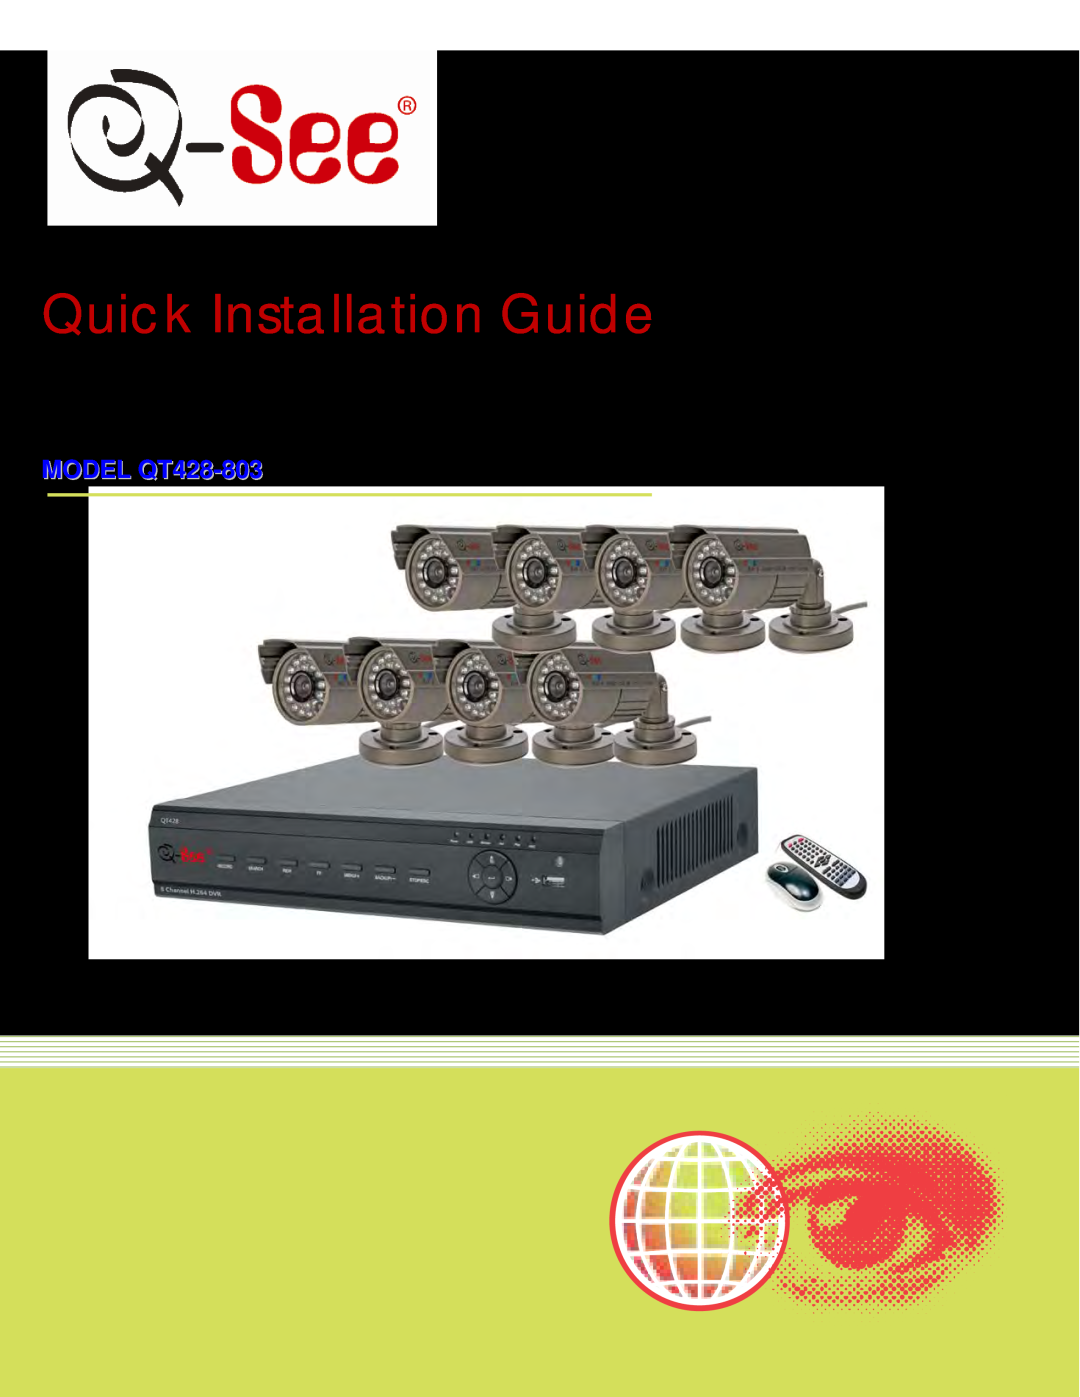 Q-See manual Quick Installation Guide, Color CCD Camera Kits MODEL QT428-803 